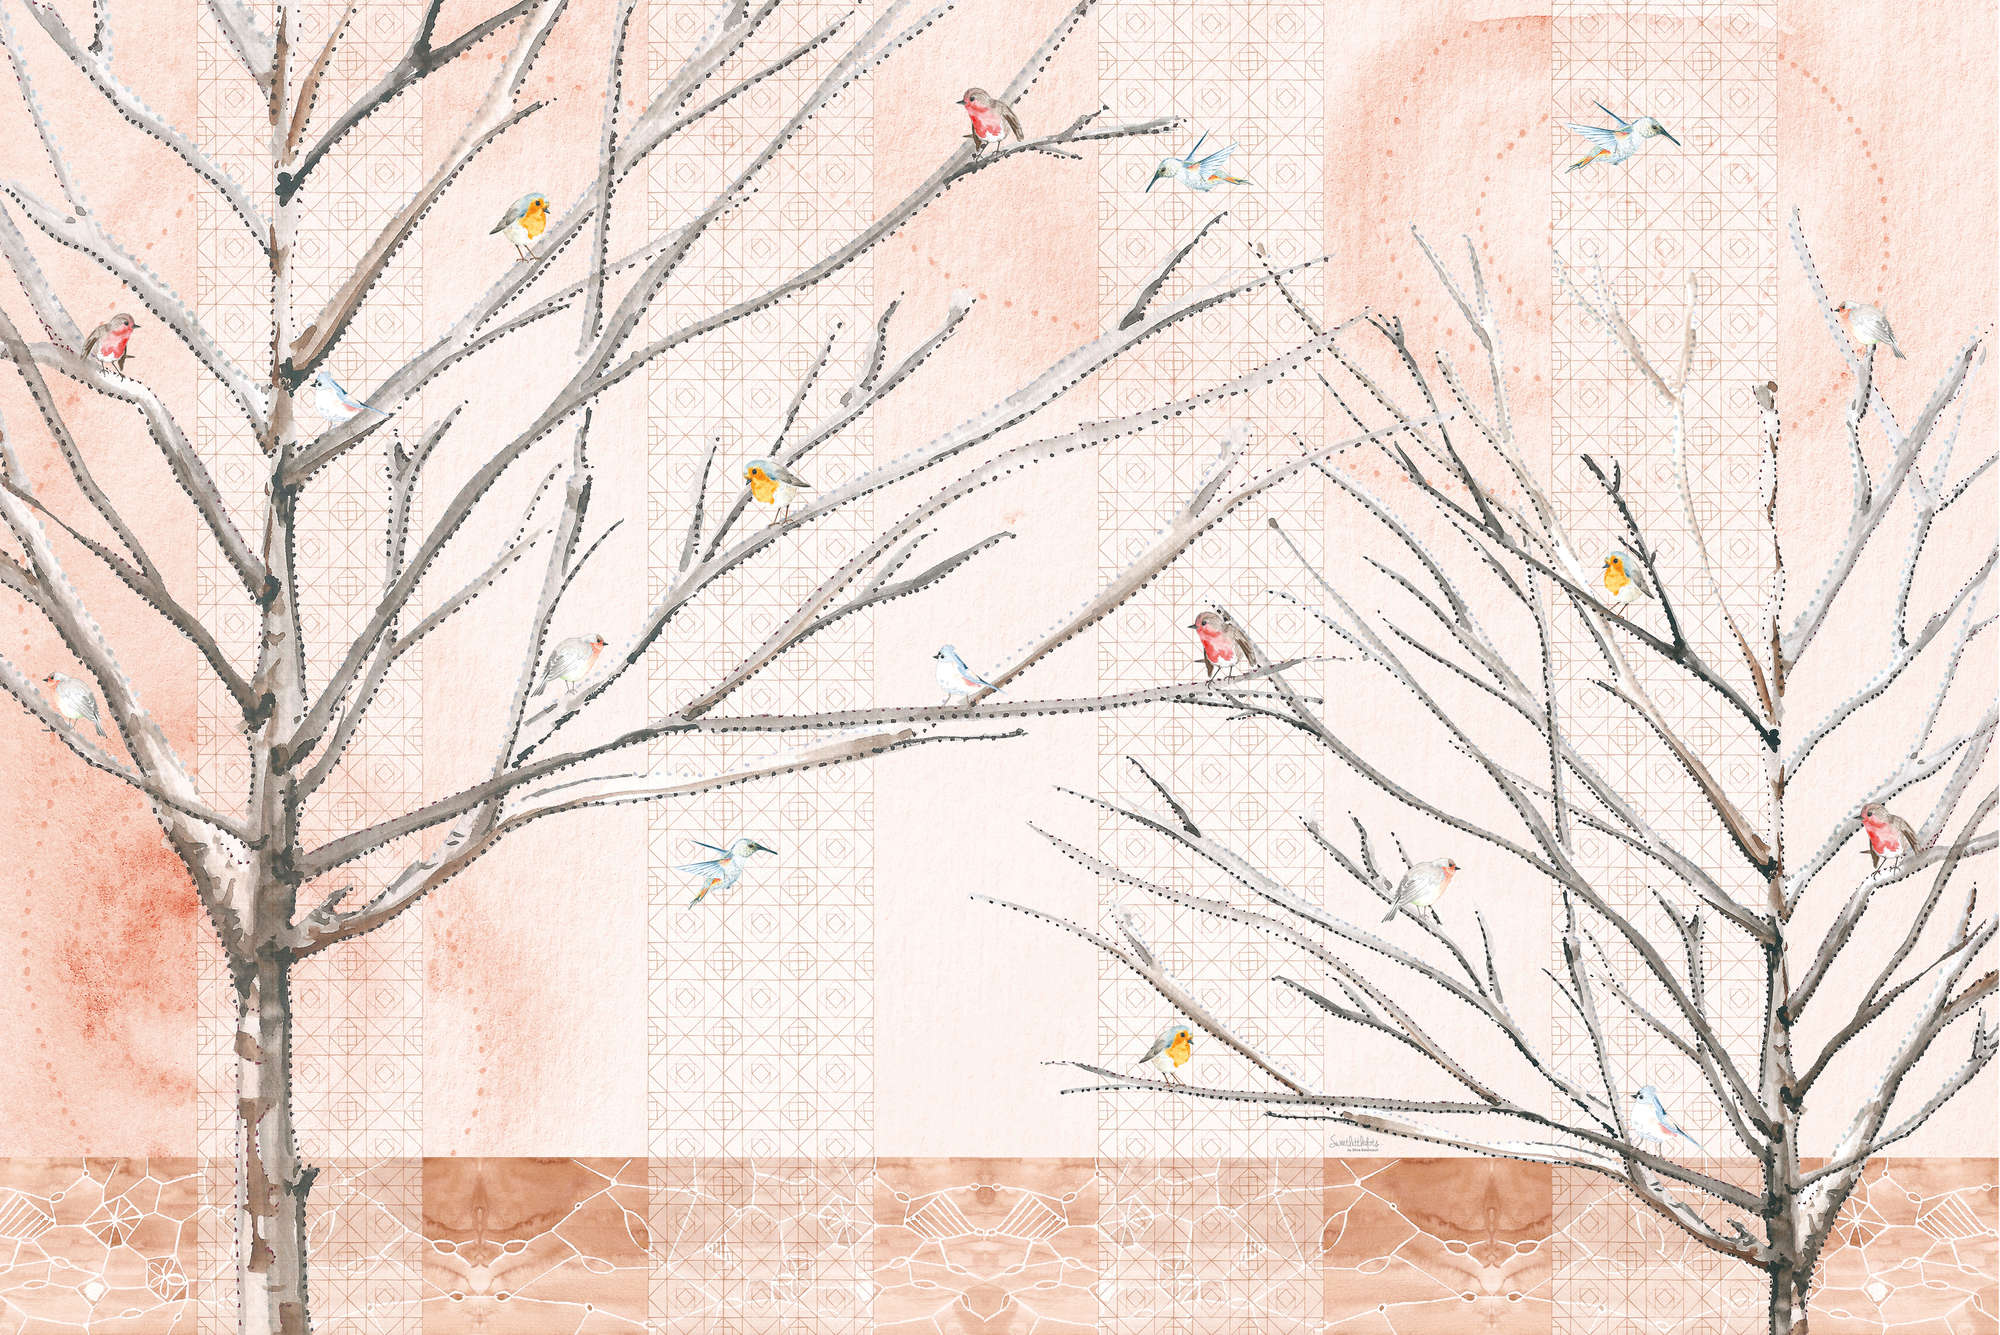             Fotomurali artistico Alberi con uccelli in beige e marrone su vinile testurizzato
        